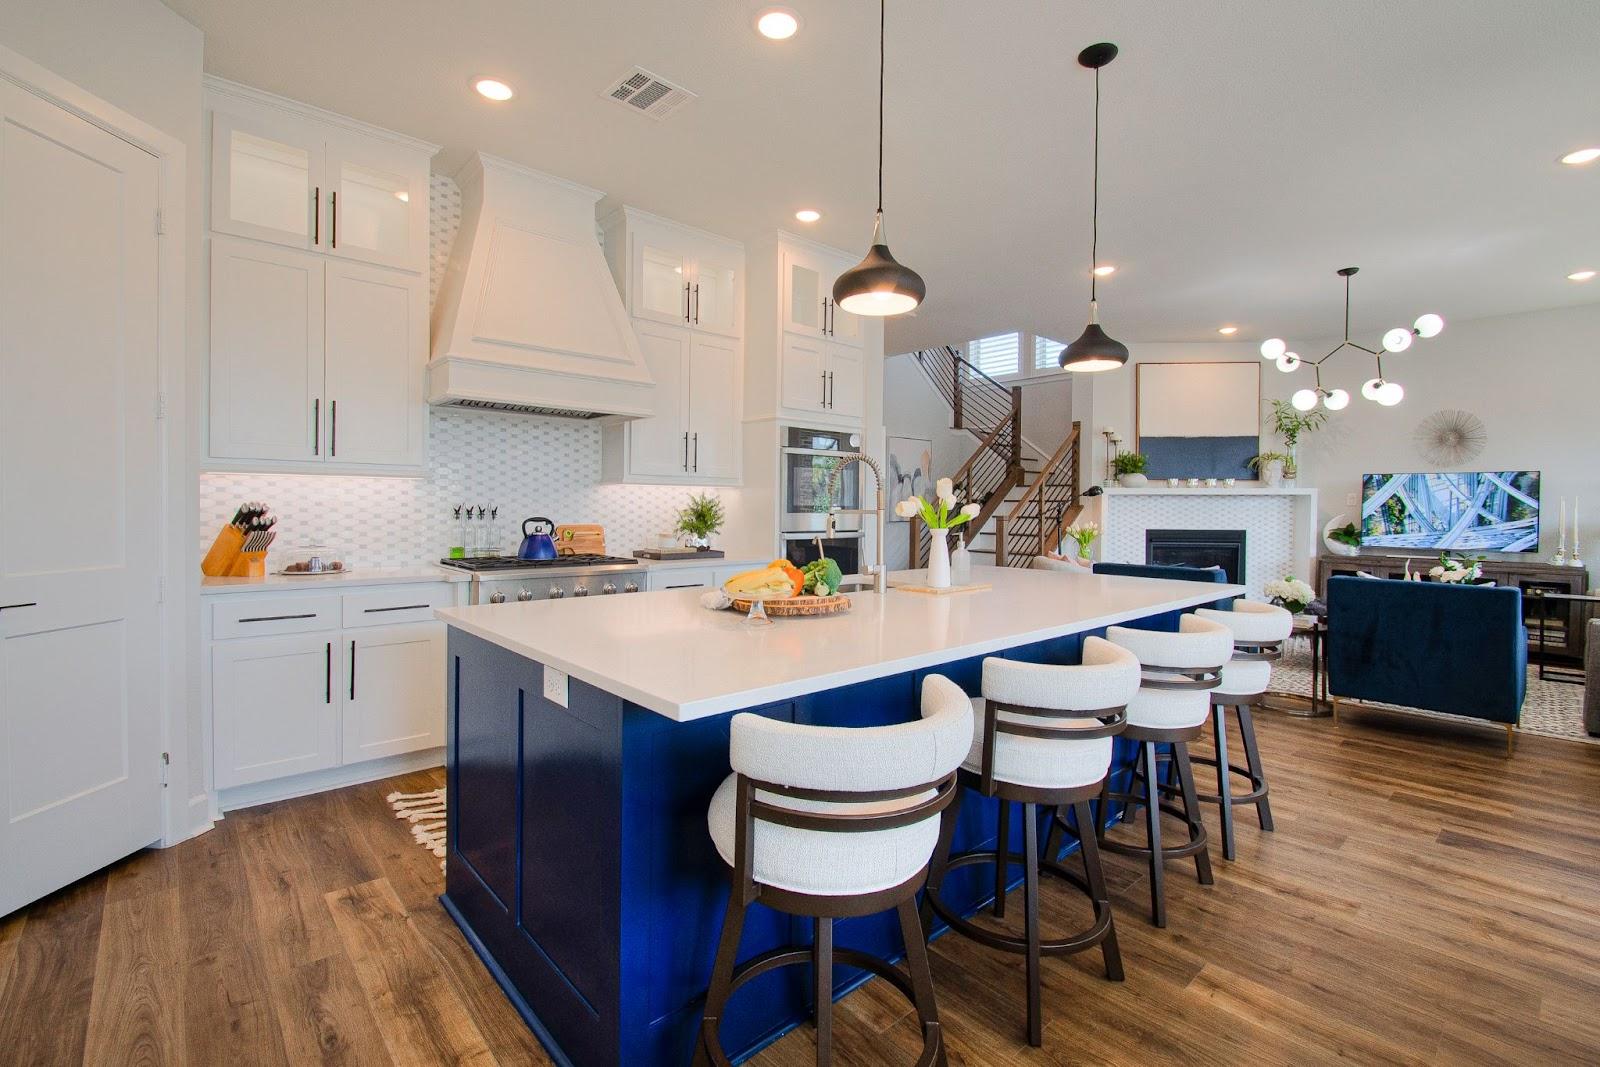 Design-By-Keti-Kitchen-Design- Dallas-Timeless-Fresh-Modern-Kitchen-Design-Statement-Island builder-grade